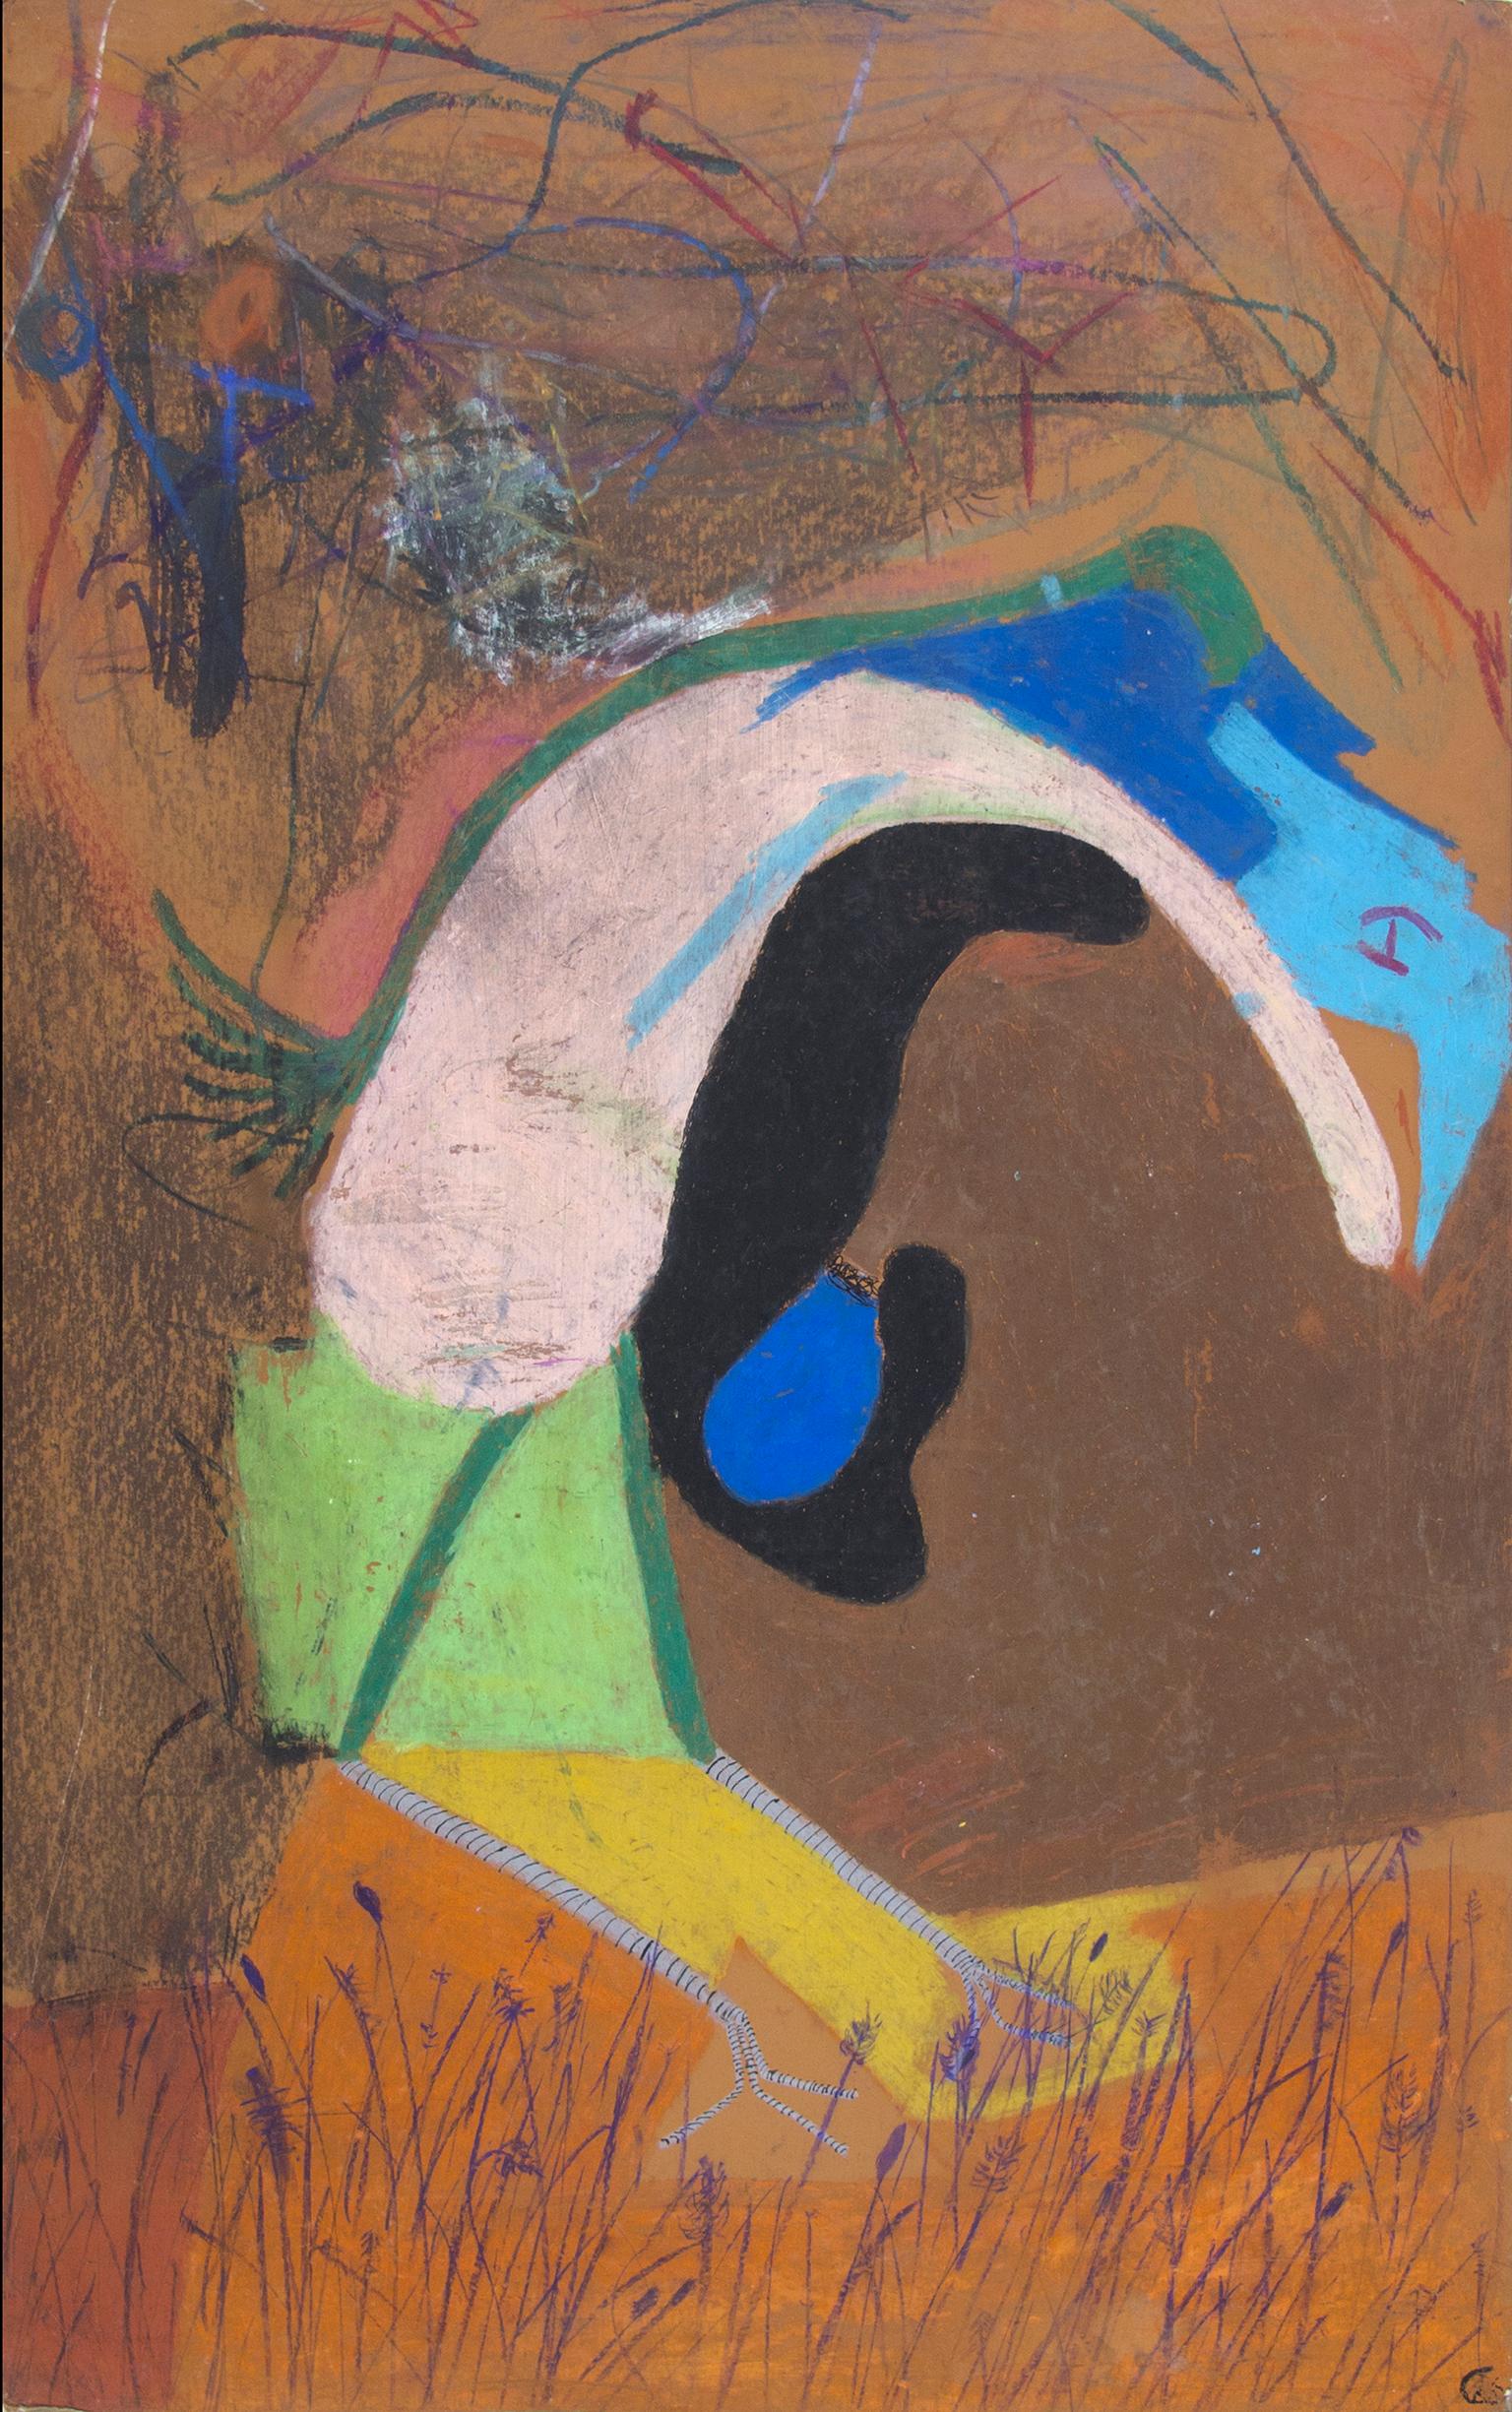 "Der erste Vogel mit Ei, Entenküken Abstraktion" ist ein Original Ölpastell auf Karton von Reginald K. Gee. Der Künstler hat das Werk auf der Rückseite paraphiert. Es zeigt ein abstrahiertes Entenküken, das ein blaues Ei auf braunem und